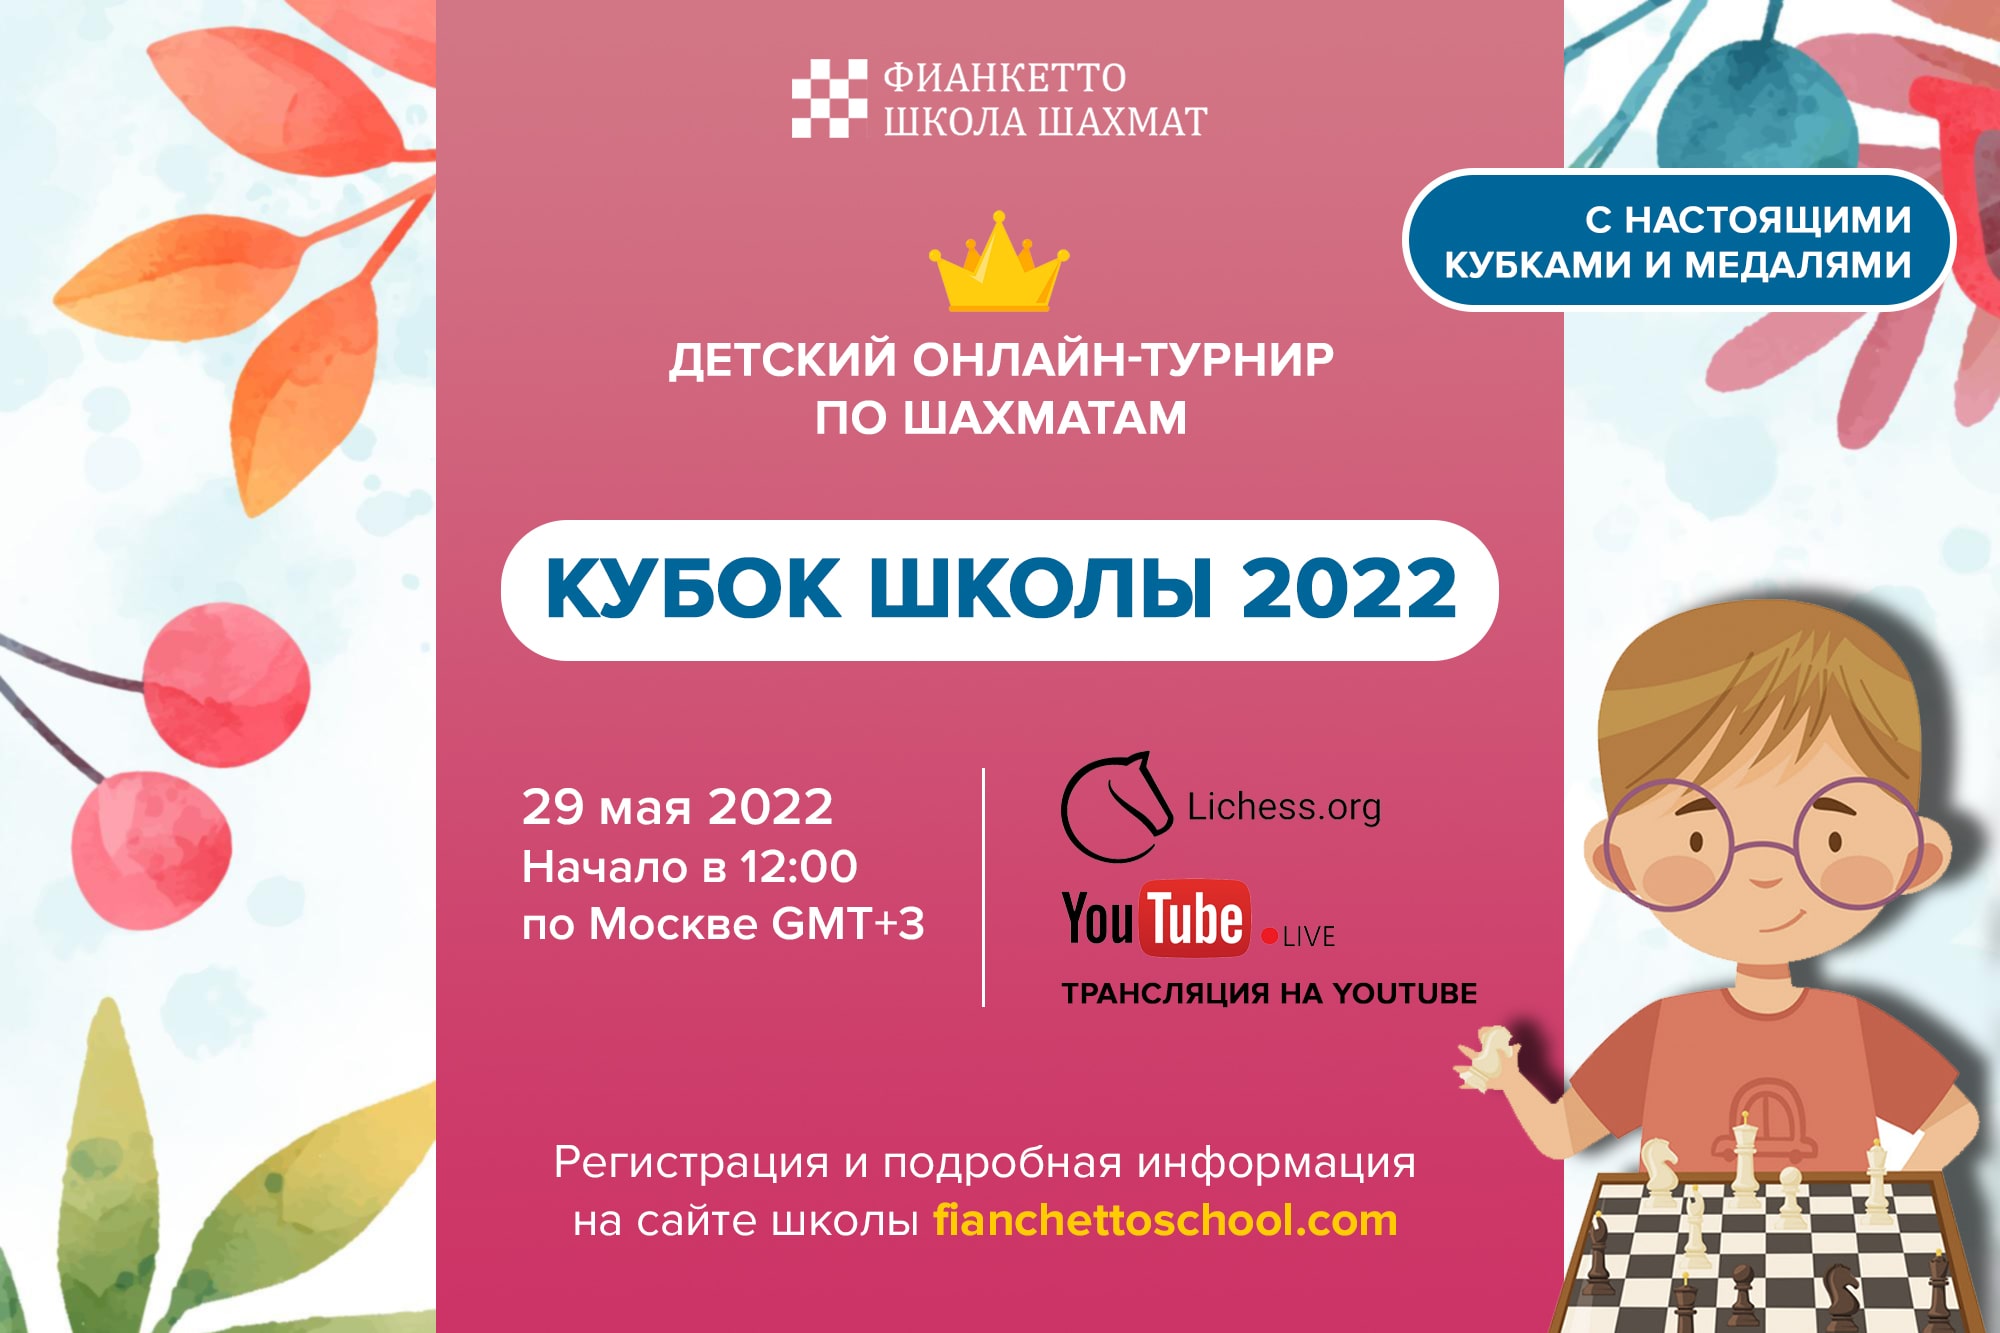 Кубок Фианкетто 2022 - онлайн-турнир по шахматам